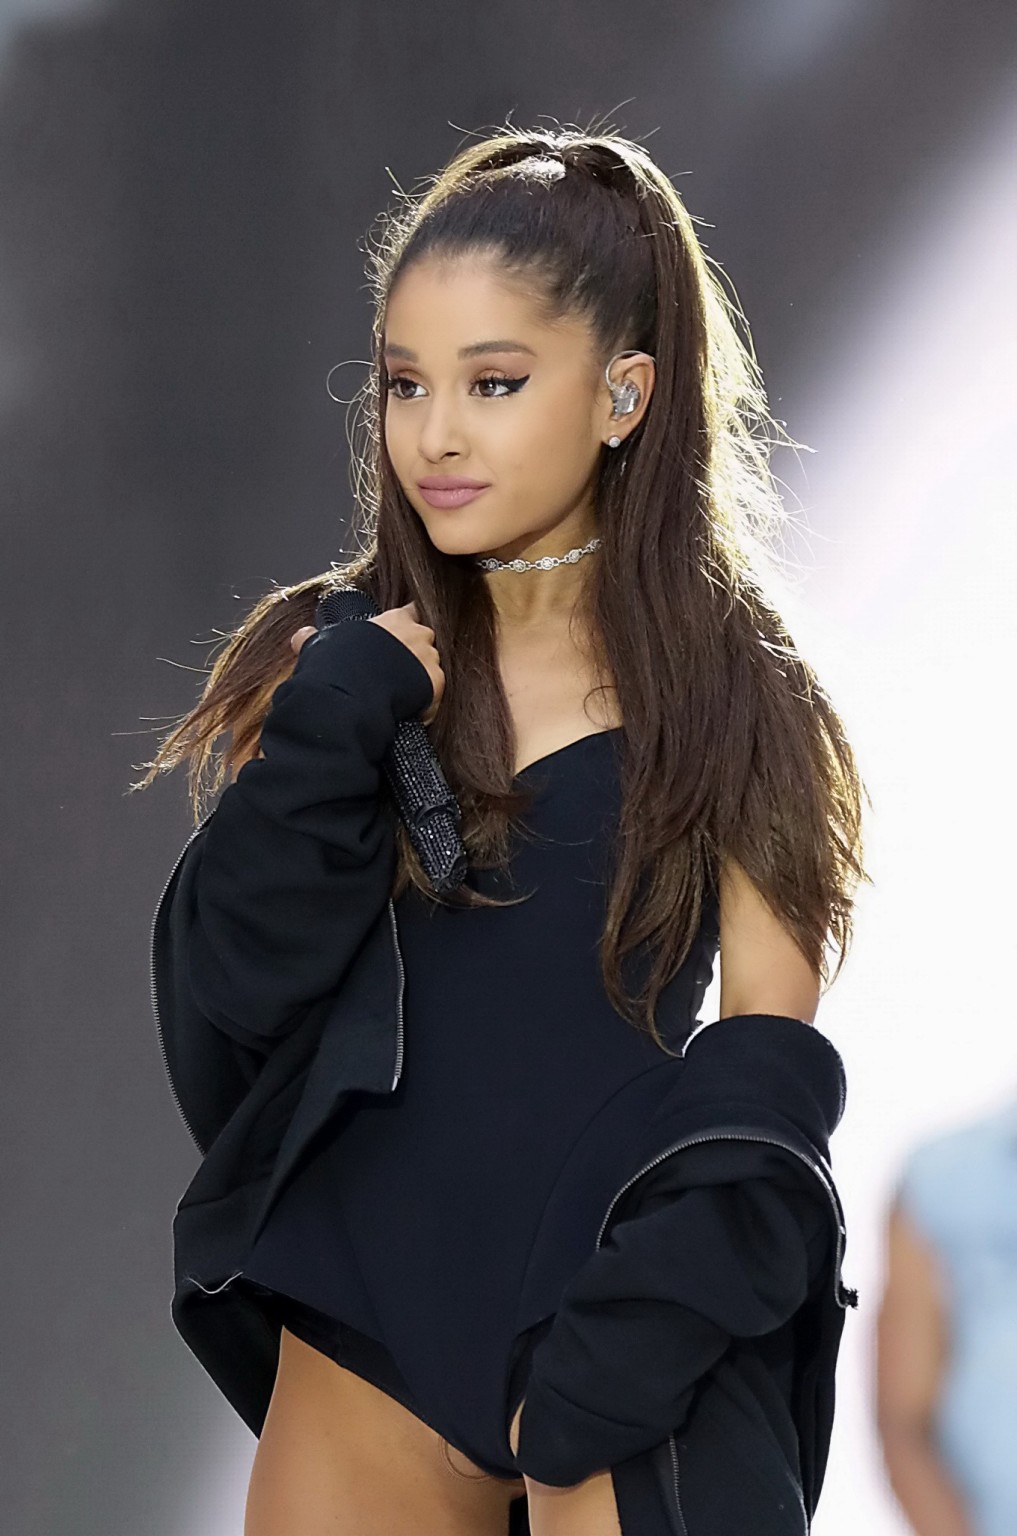 Ariana grande zeigt ihre rasierte Muschi in einem winzigen schwarzen Outfit bei einem Auftritt
 #75161899